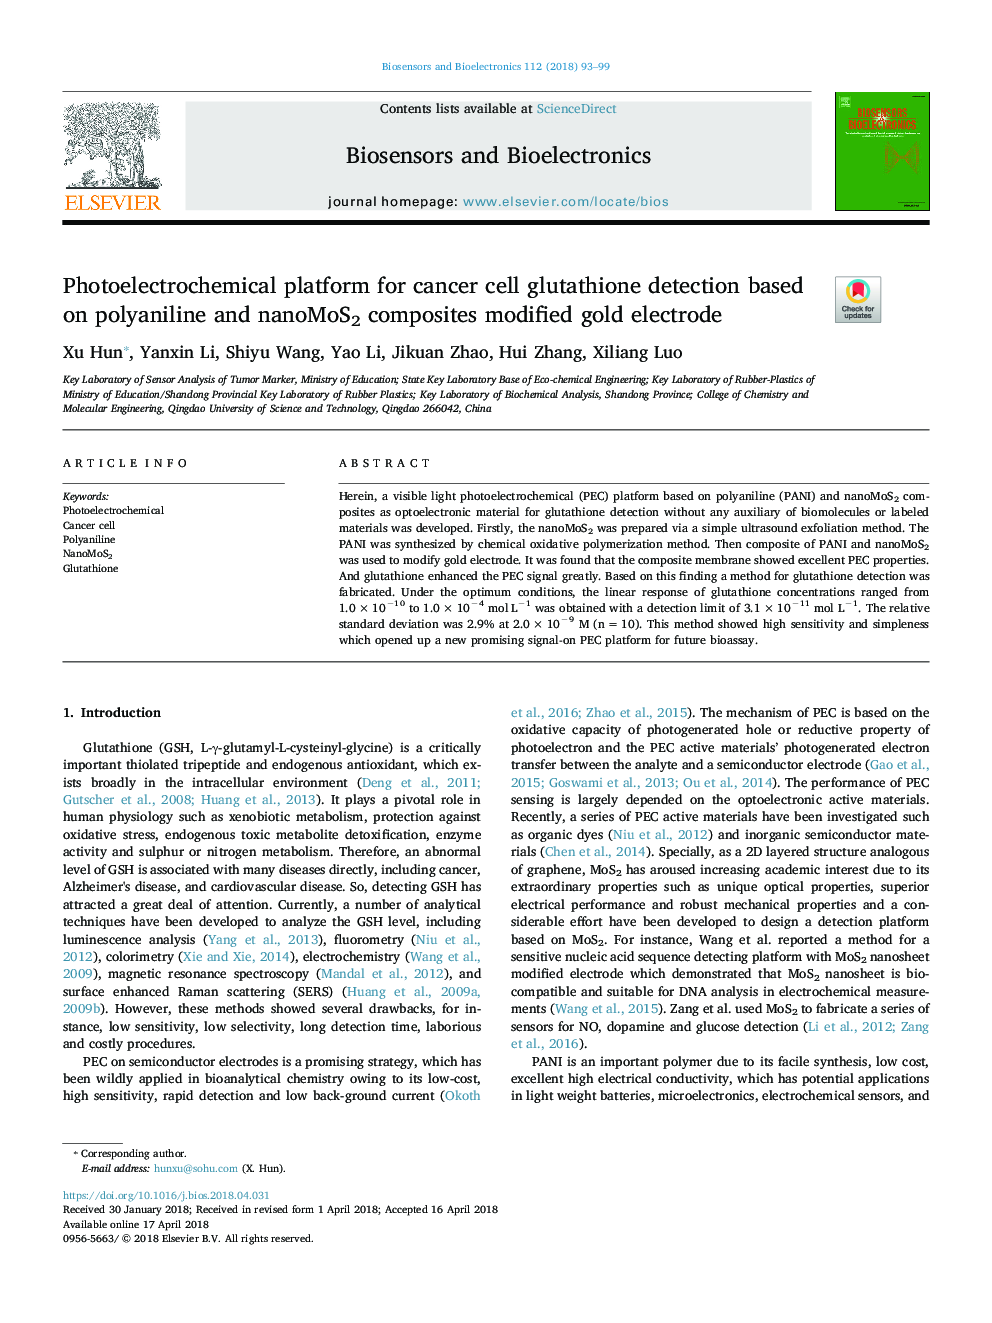 پلاکت الکتروشیمیایی برای تشخیص گلوتاتیون سلول سرطانی بر اساس ترکیبات پلیانیلین و نانو مؤسسه کامپوزیت 